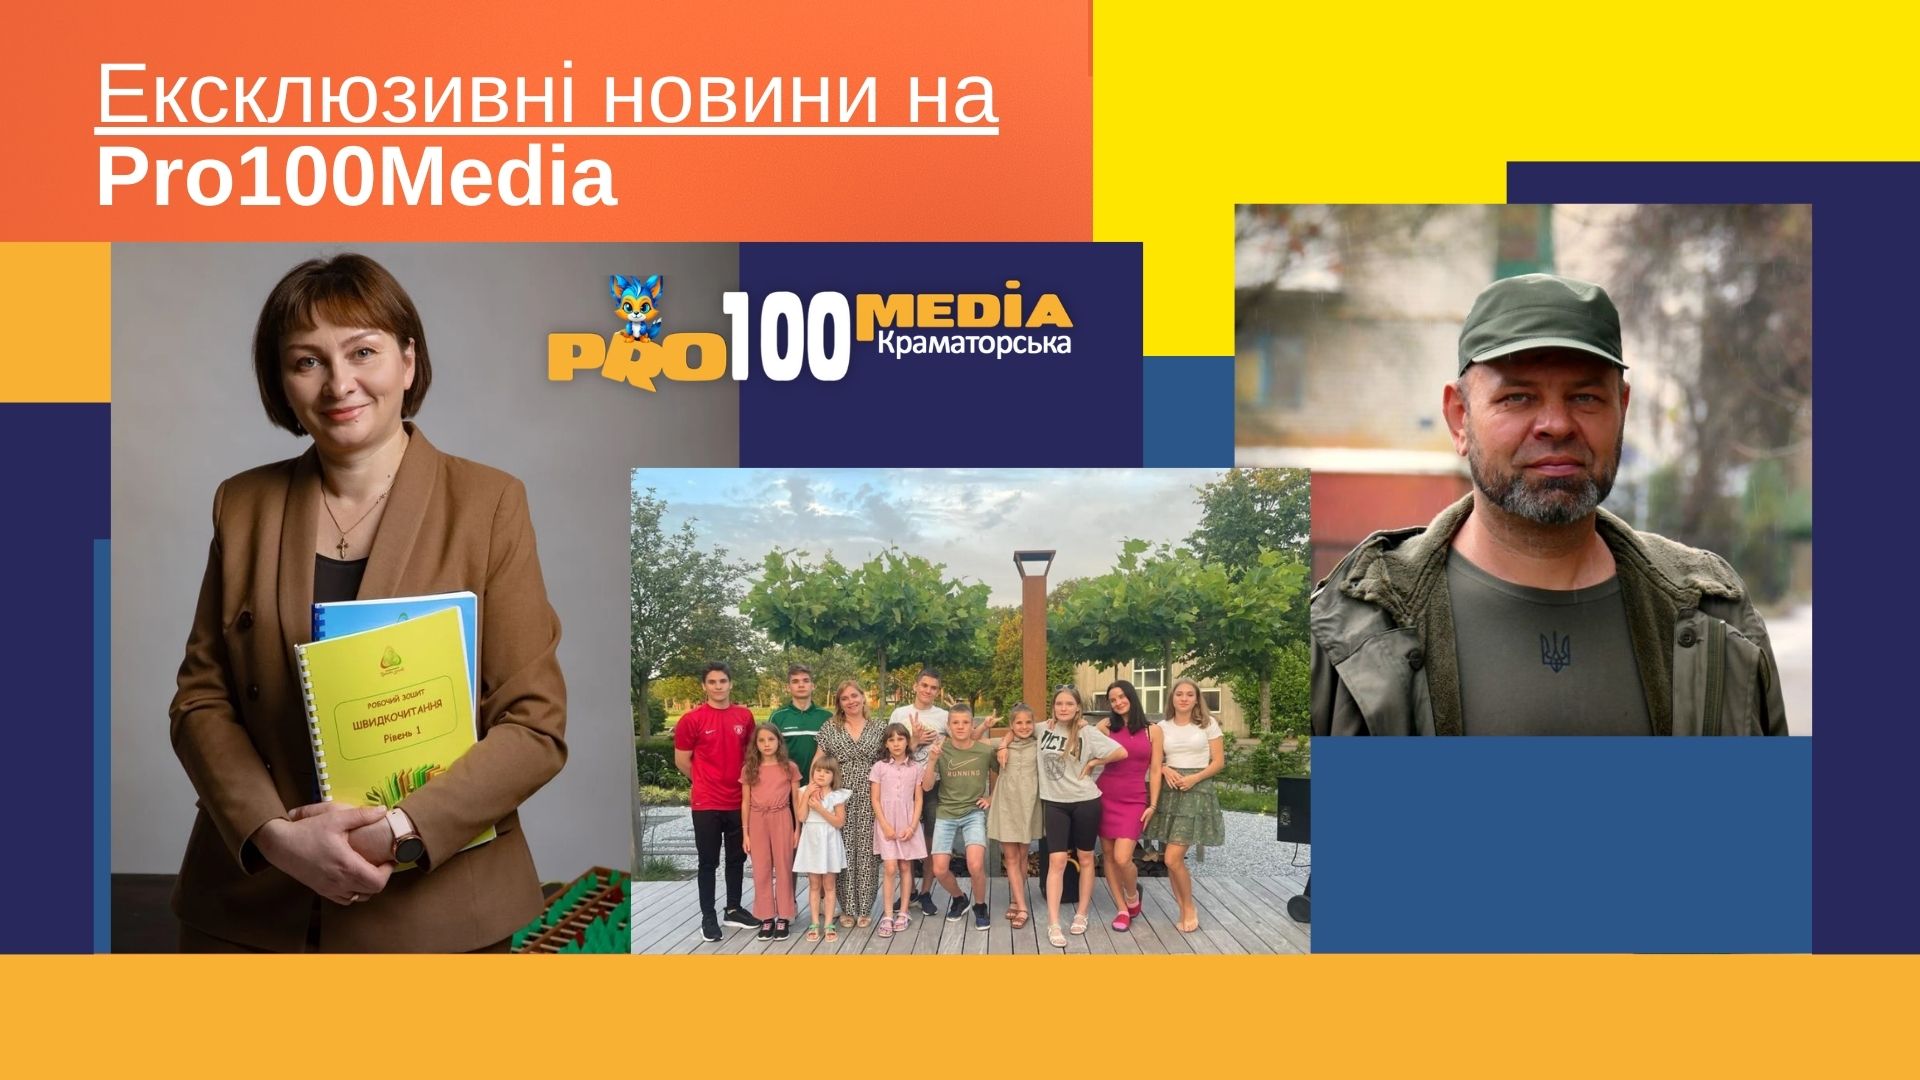 Pro100media